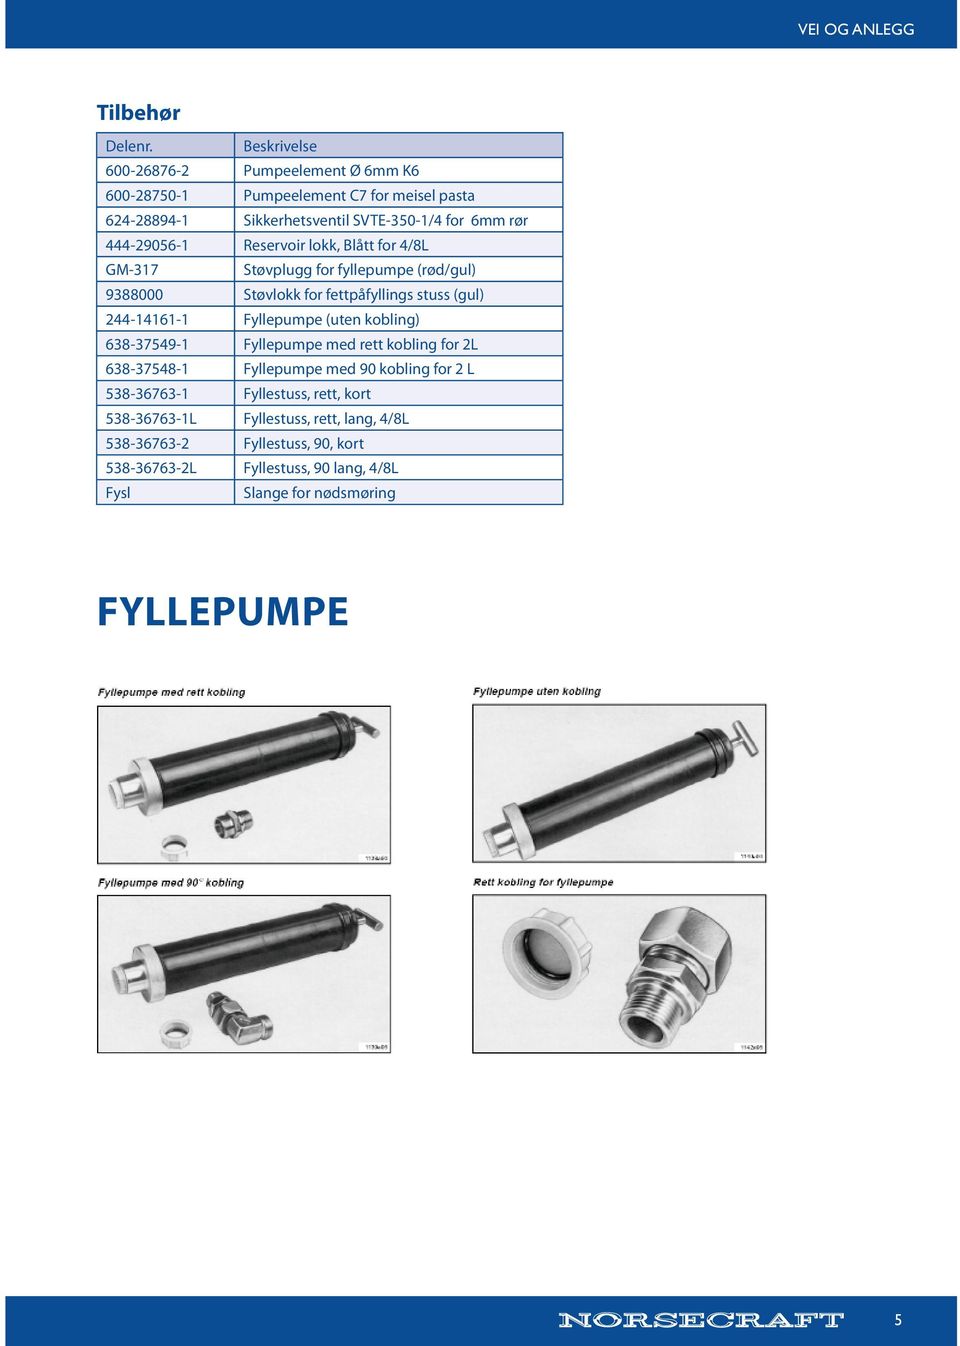 Fyllepumpe (uten kobling) 638-37549-1 Fyllepumpe med rett kobling for 2L 638-37548-1 Fyllepumpe med 90 kobling for 2 L 538-36763-1 Fyllestuss, rett,